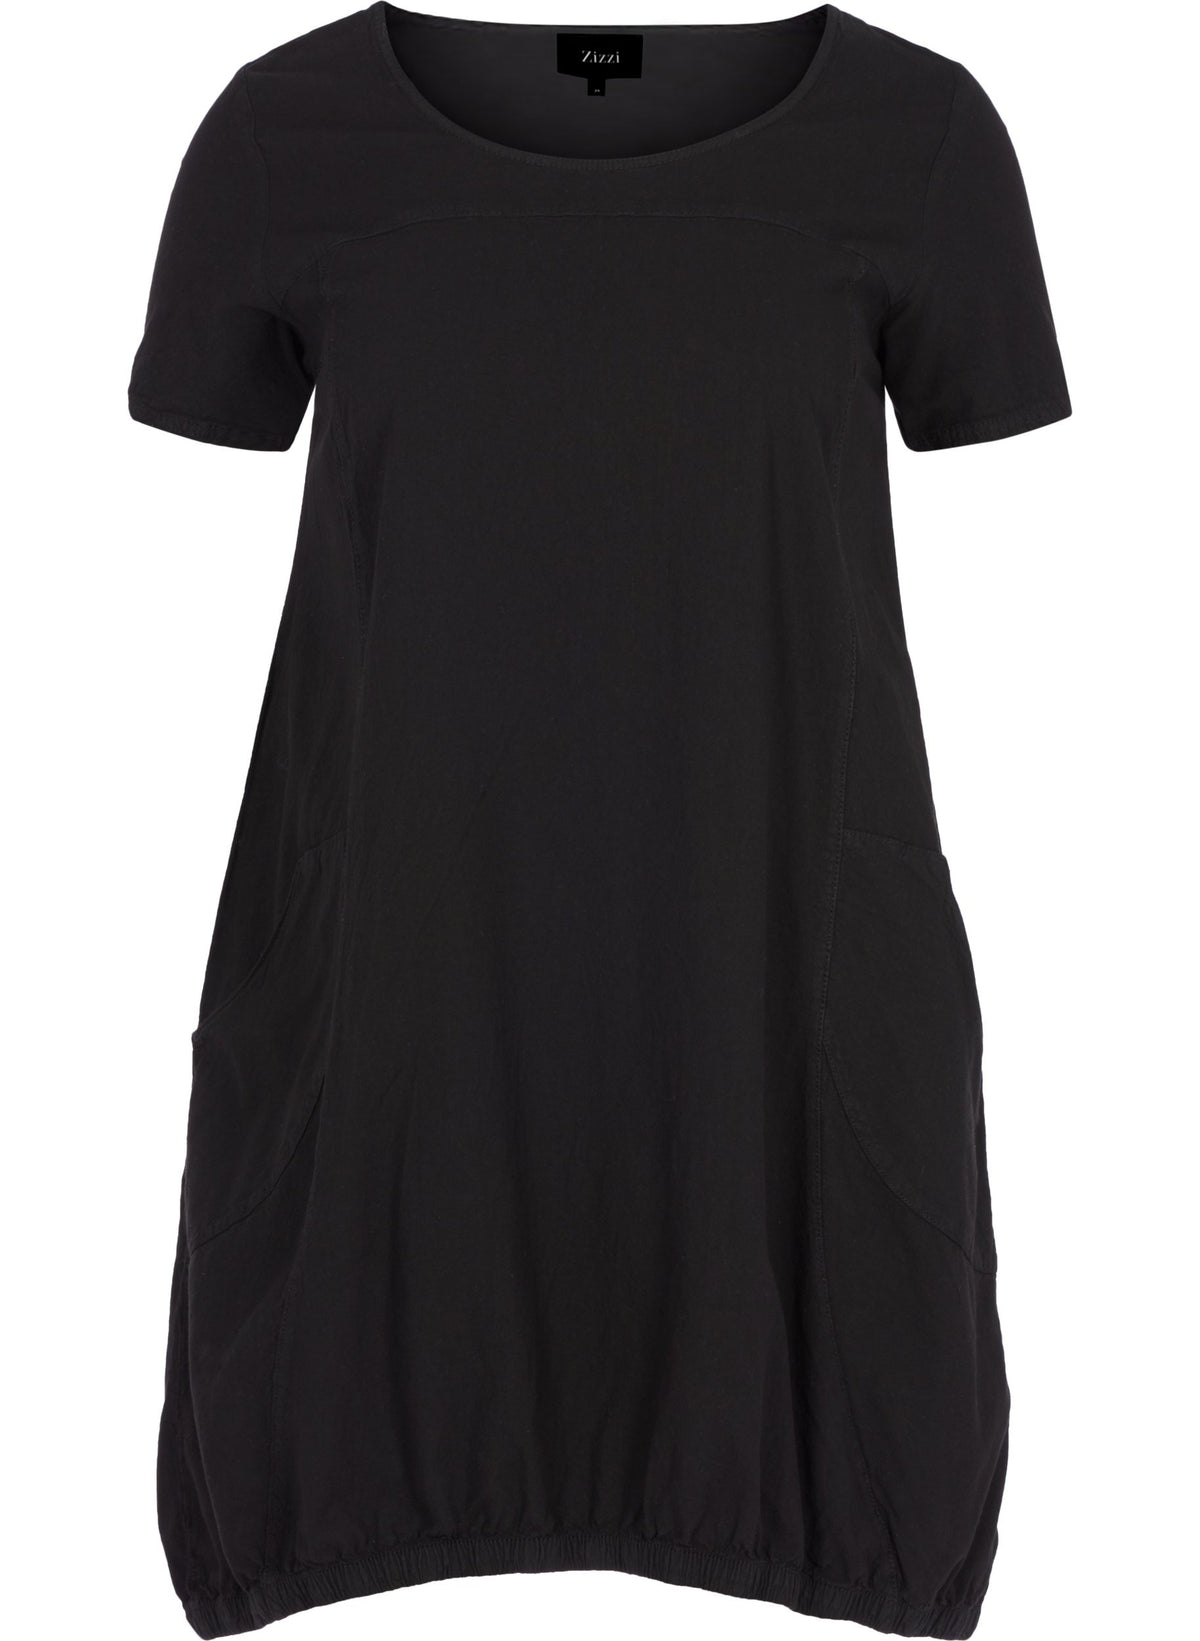 Zizzi Cotton Bubble Dress in Black - Wardrobe Plus